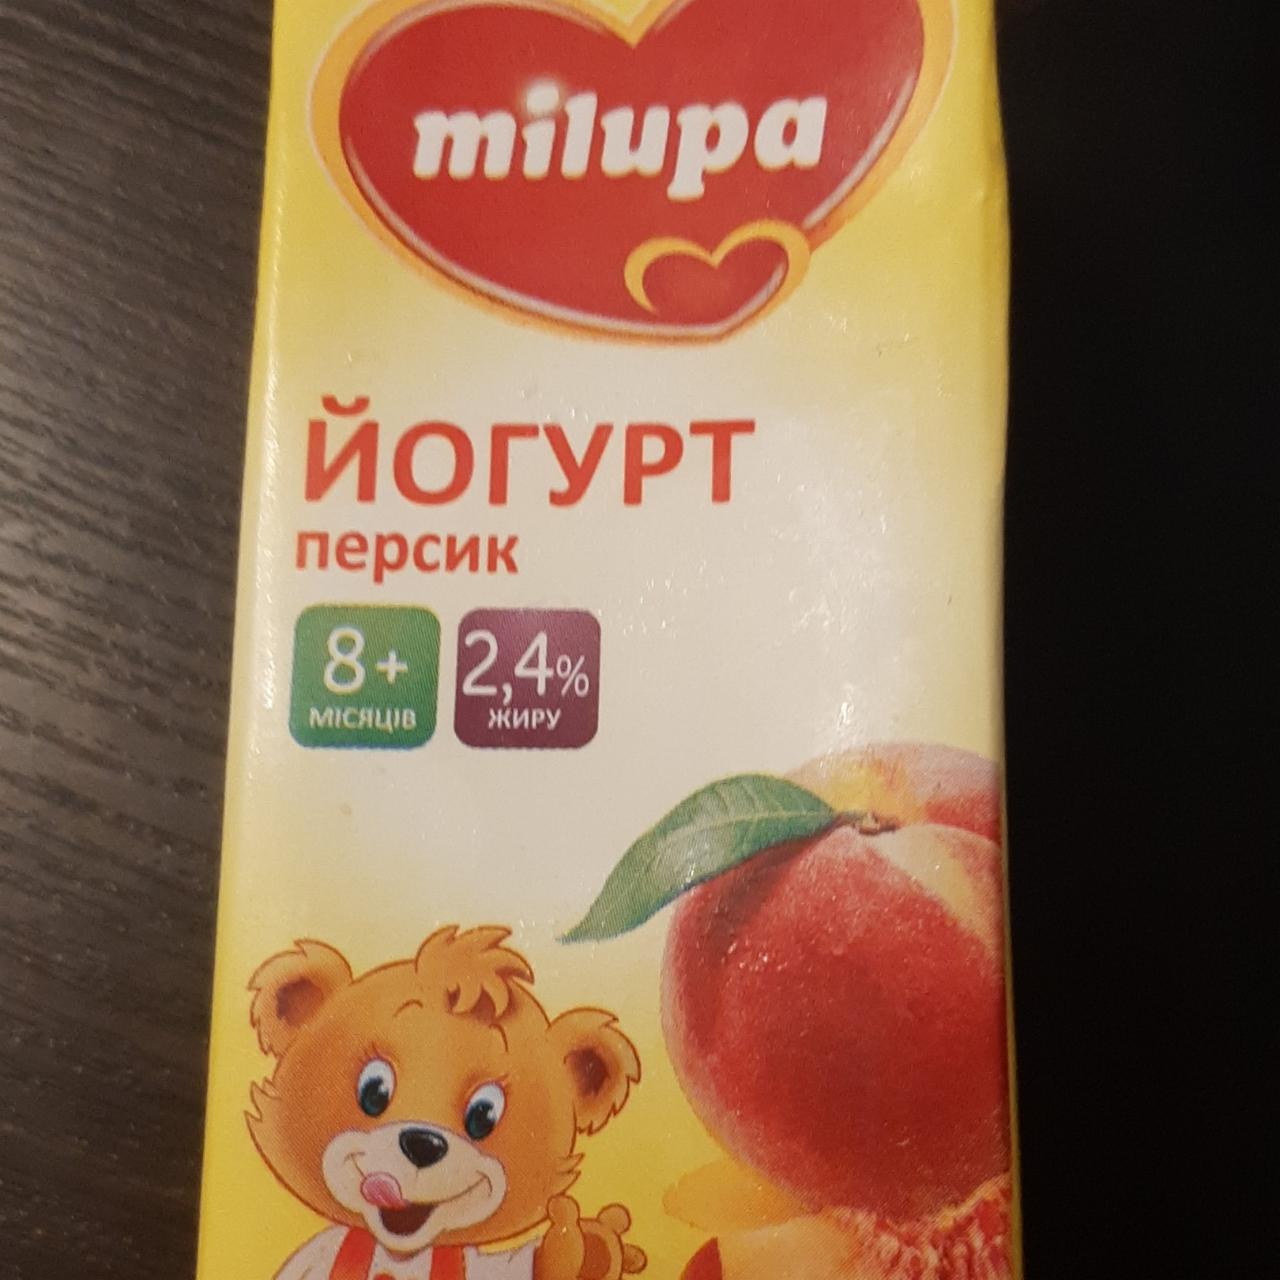 Фото - йогурт персик питьевой для детей Milupa